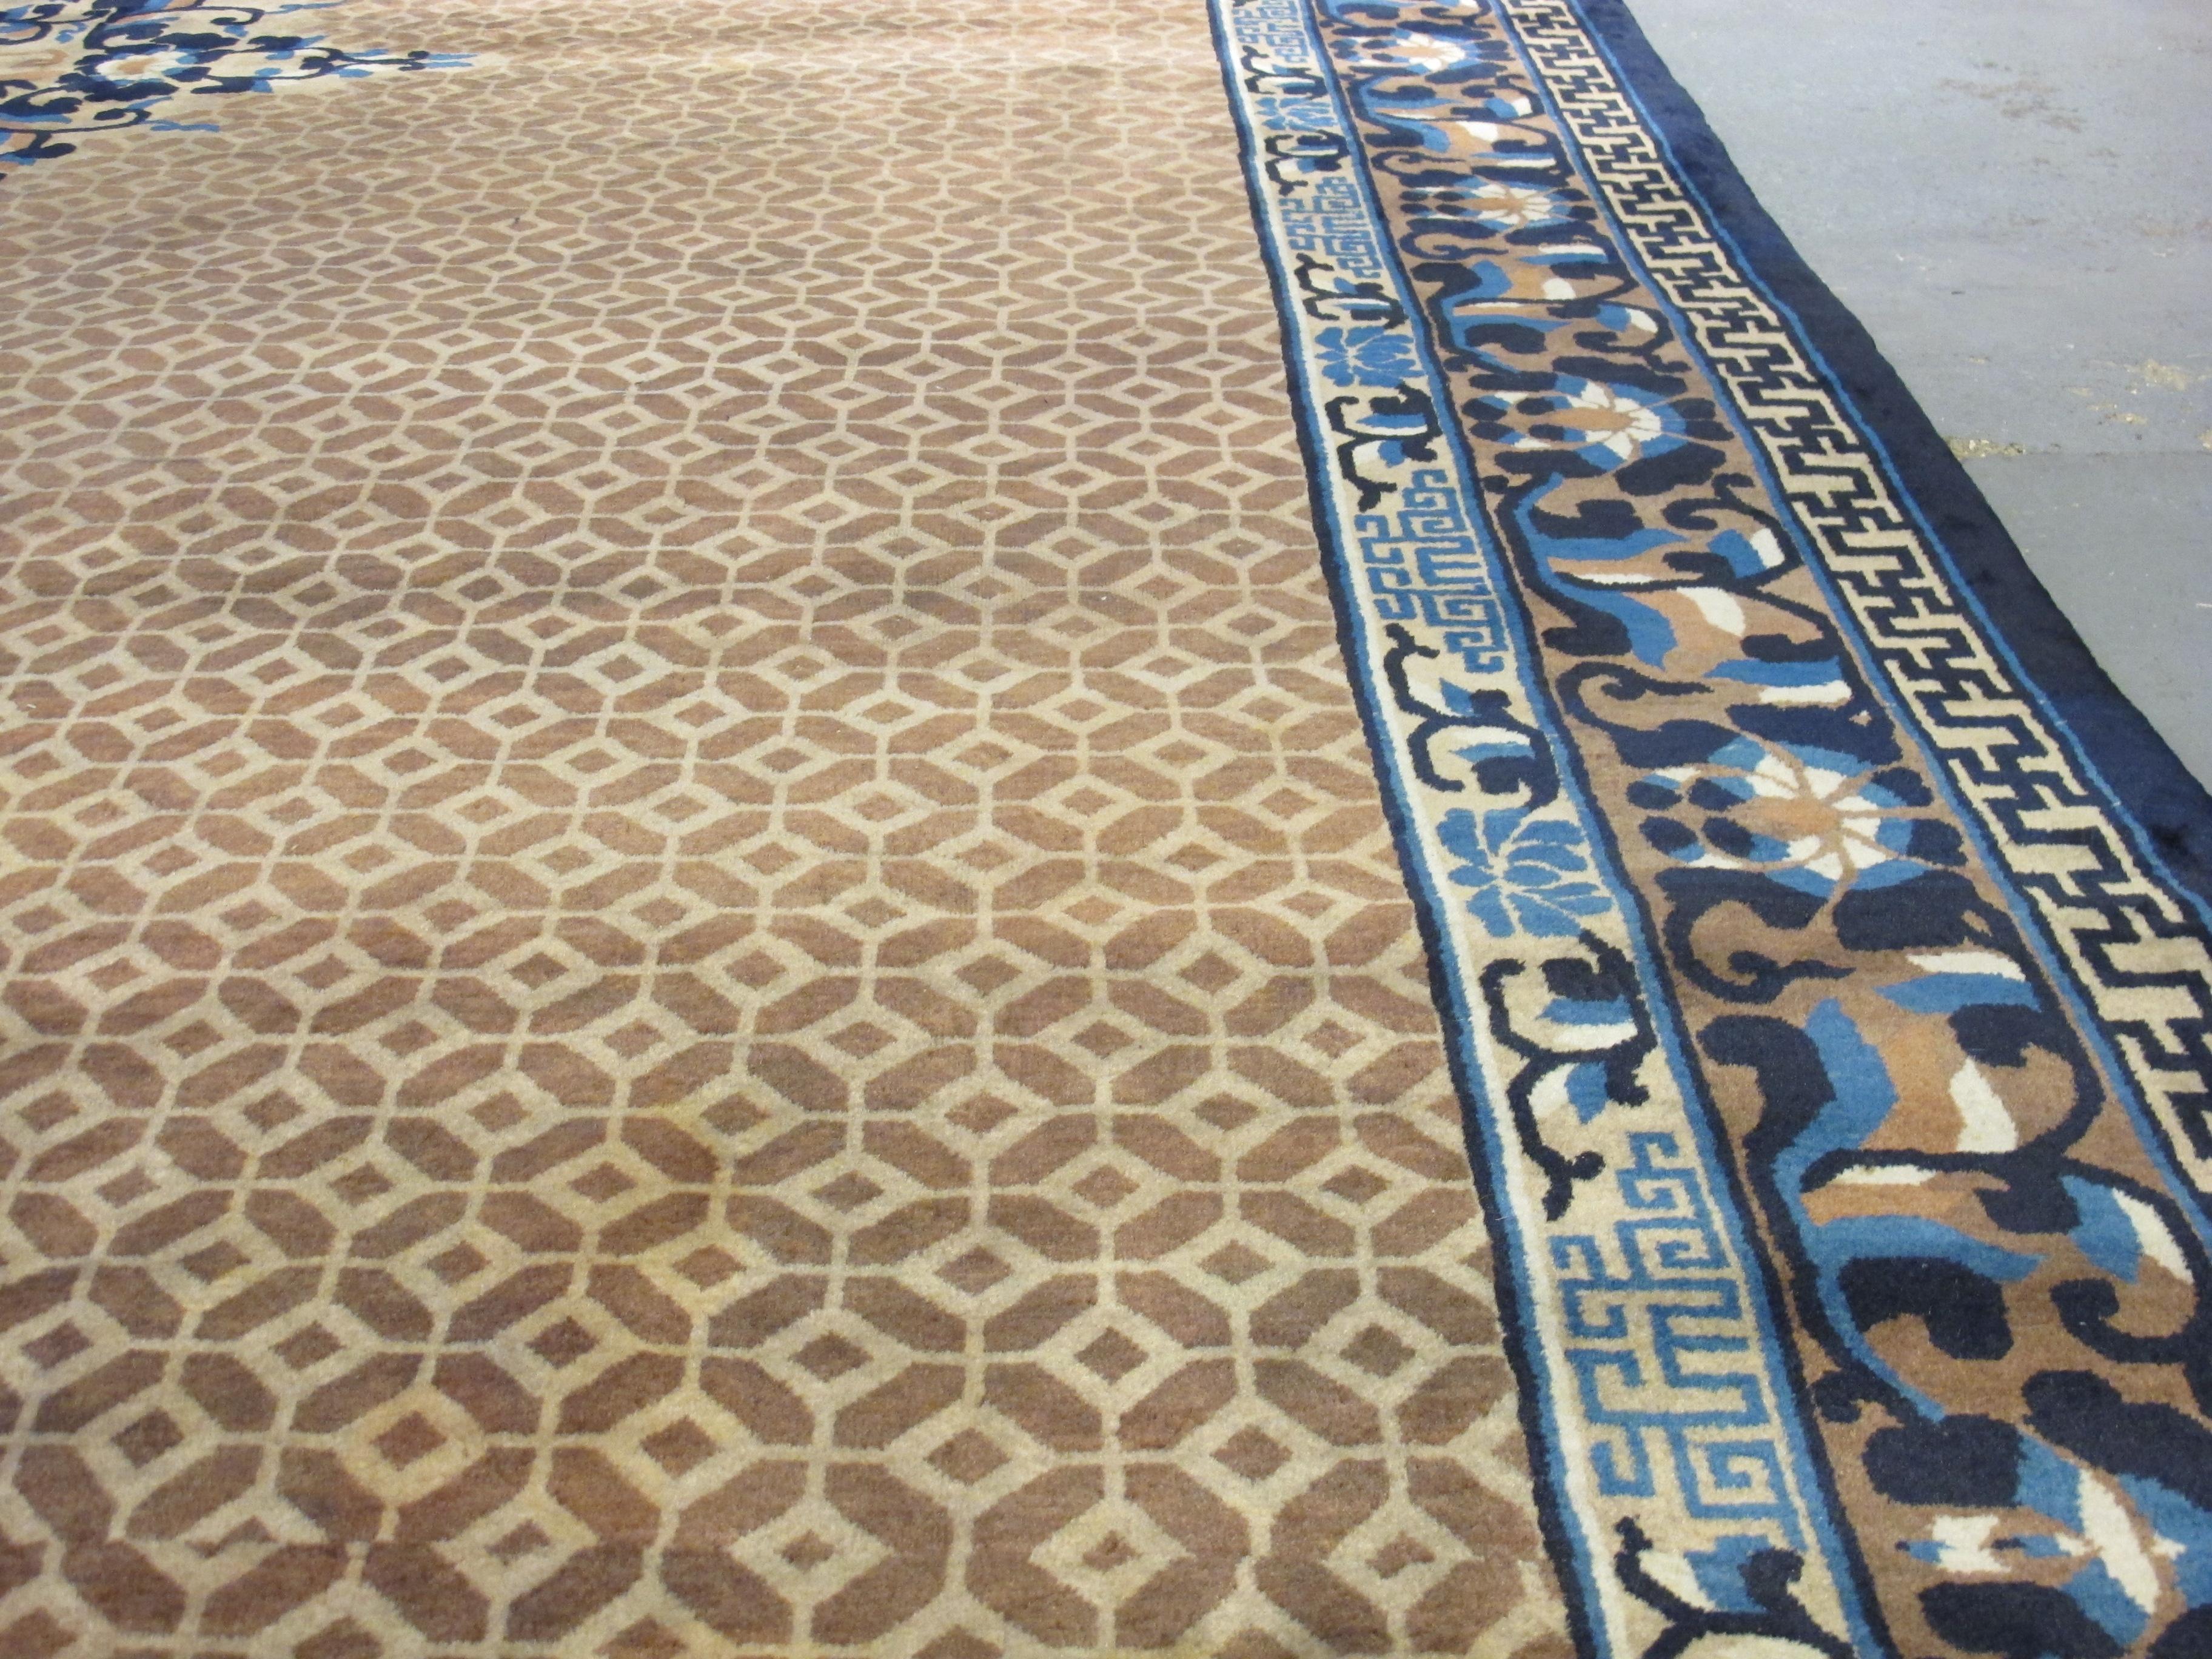 Les tapis et textiles chinois ont une riche histoire de tissage, qui remonte à plusieurs siècles, en particulier dans la région septentrionale de Ningxia. Lorsque ces pièces ont commencé à attirer l'attention des marchés américain et européen, au